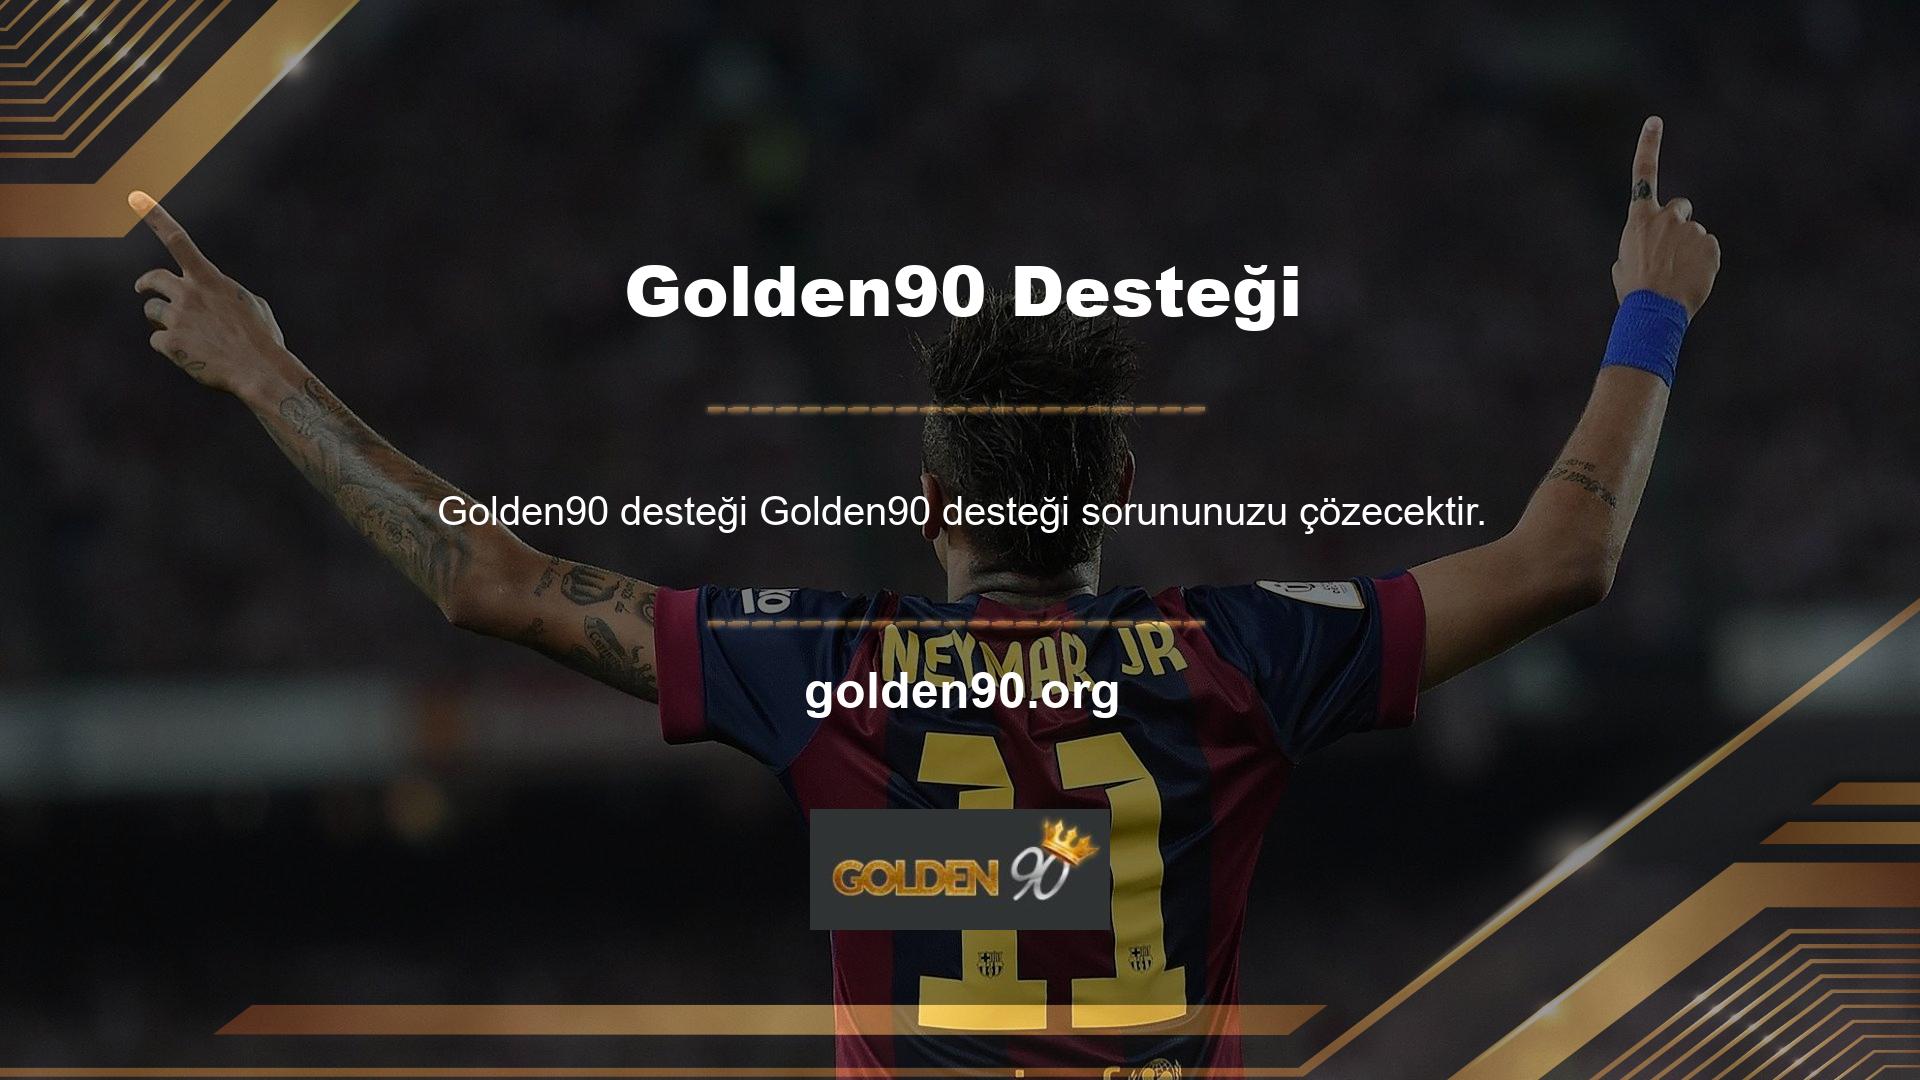 Bahis şirketi Golden90, spor bahisleri ve canlı bahisler sunmakta olup, yalnızca casino ve canlı oyunlarıyla çok geniş bir topluluğun ilgisini çekmeyi hedeflemektedir